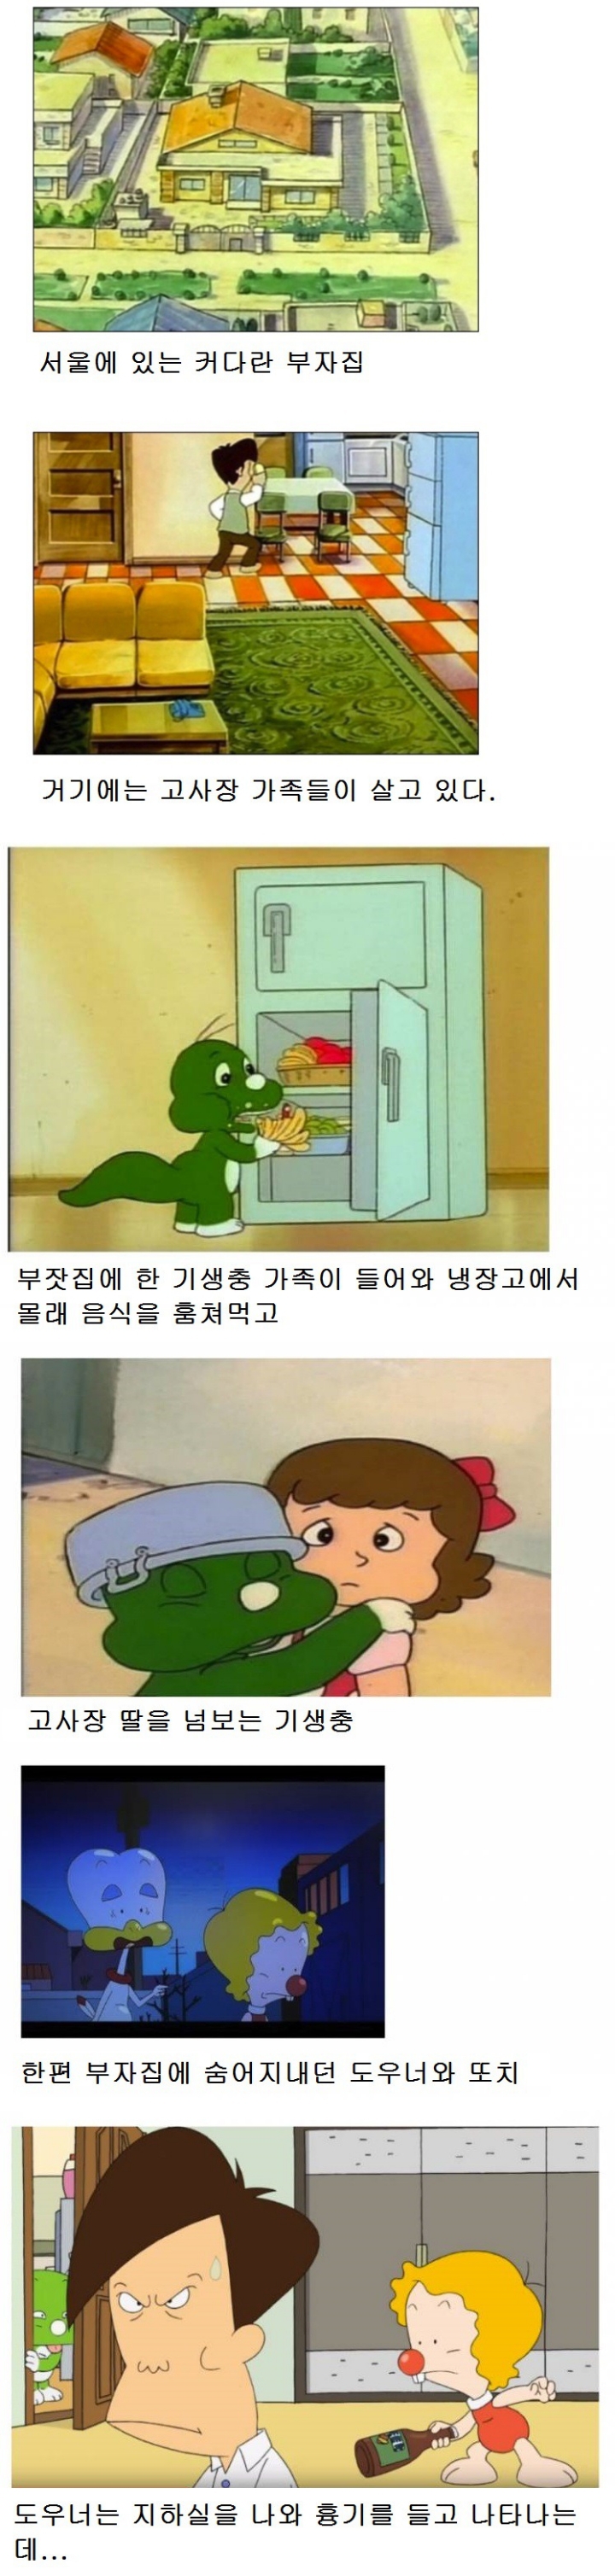 봉준호 영화 ' 기생충 ' 표절 논란